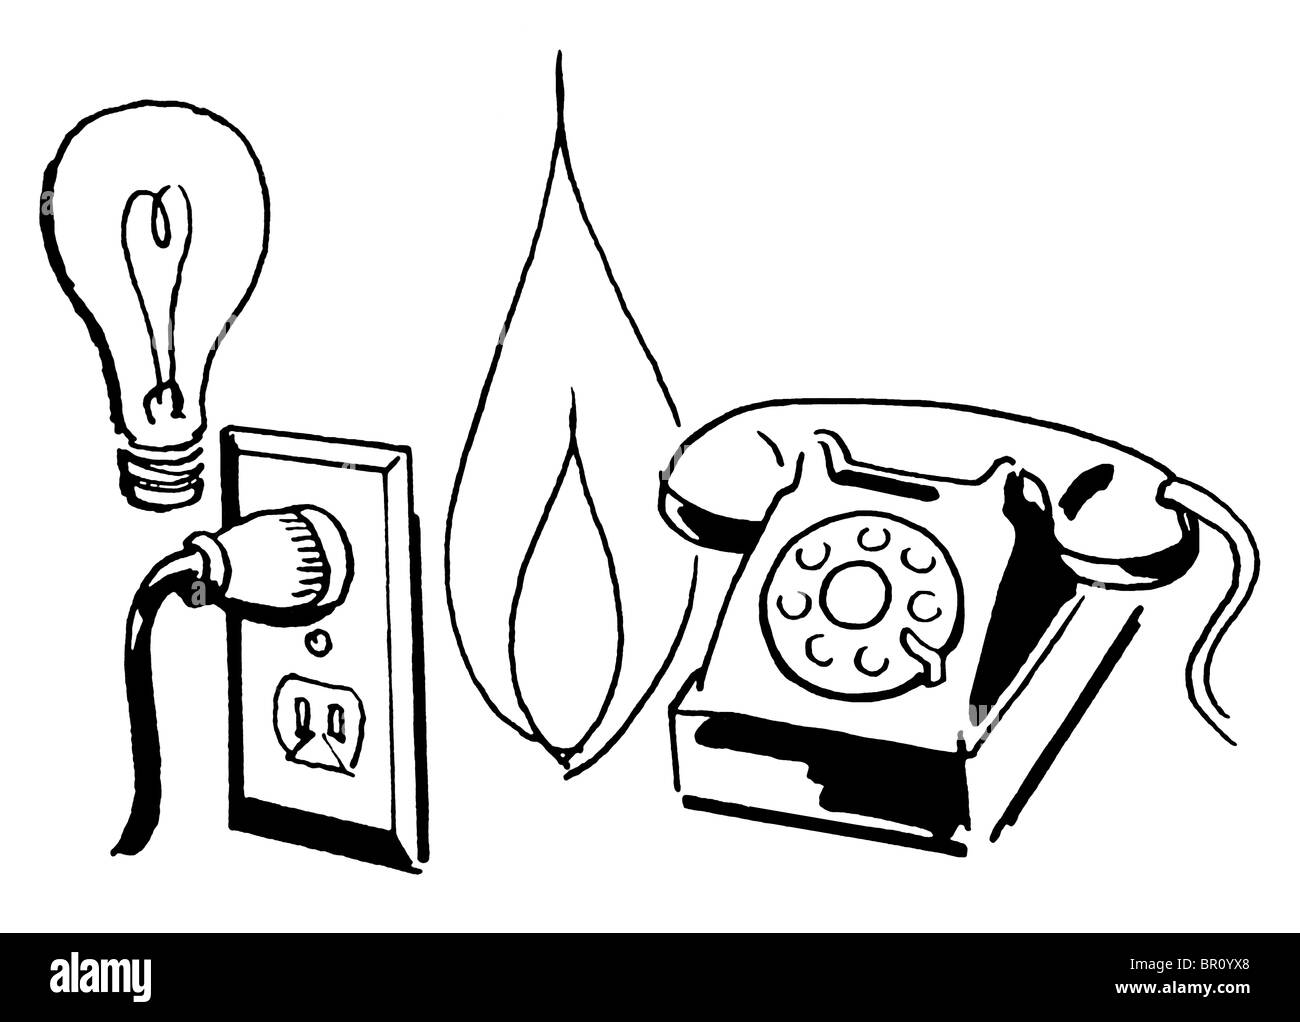 Eine schwarz-weiß Version einer Gruppierung von Strichzeichnungen von einer Glühbirne, Steckdose, Flamme und Telefon Stockfoto